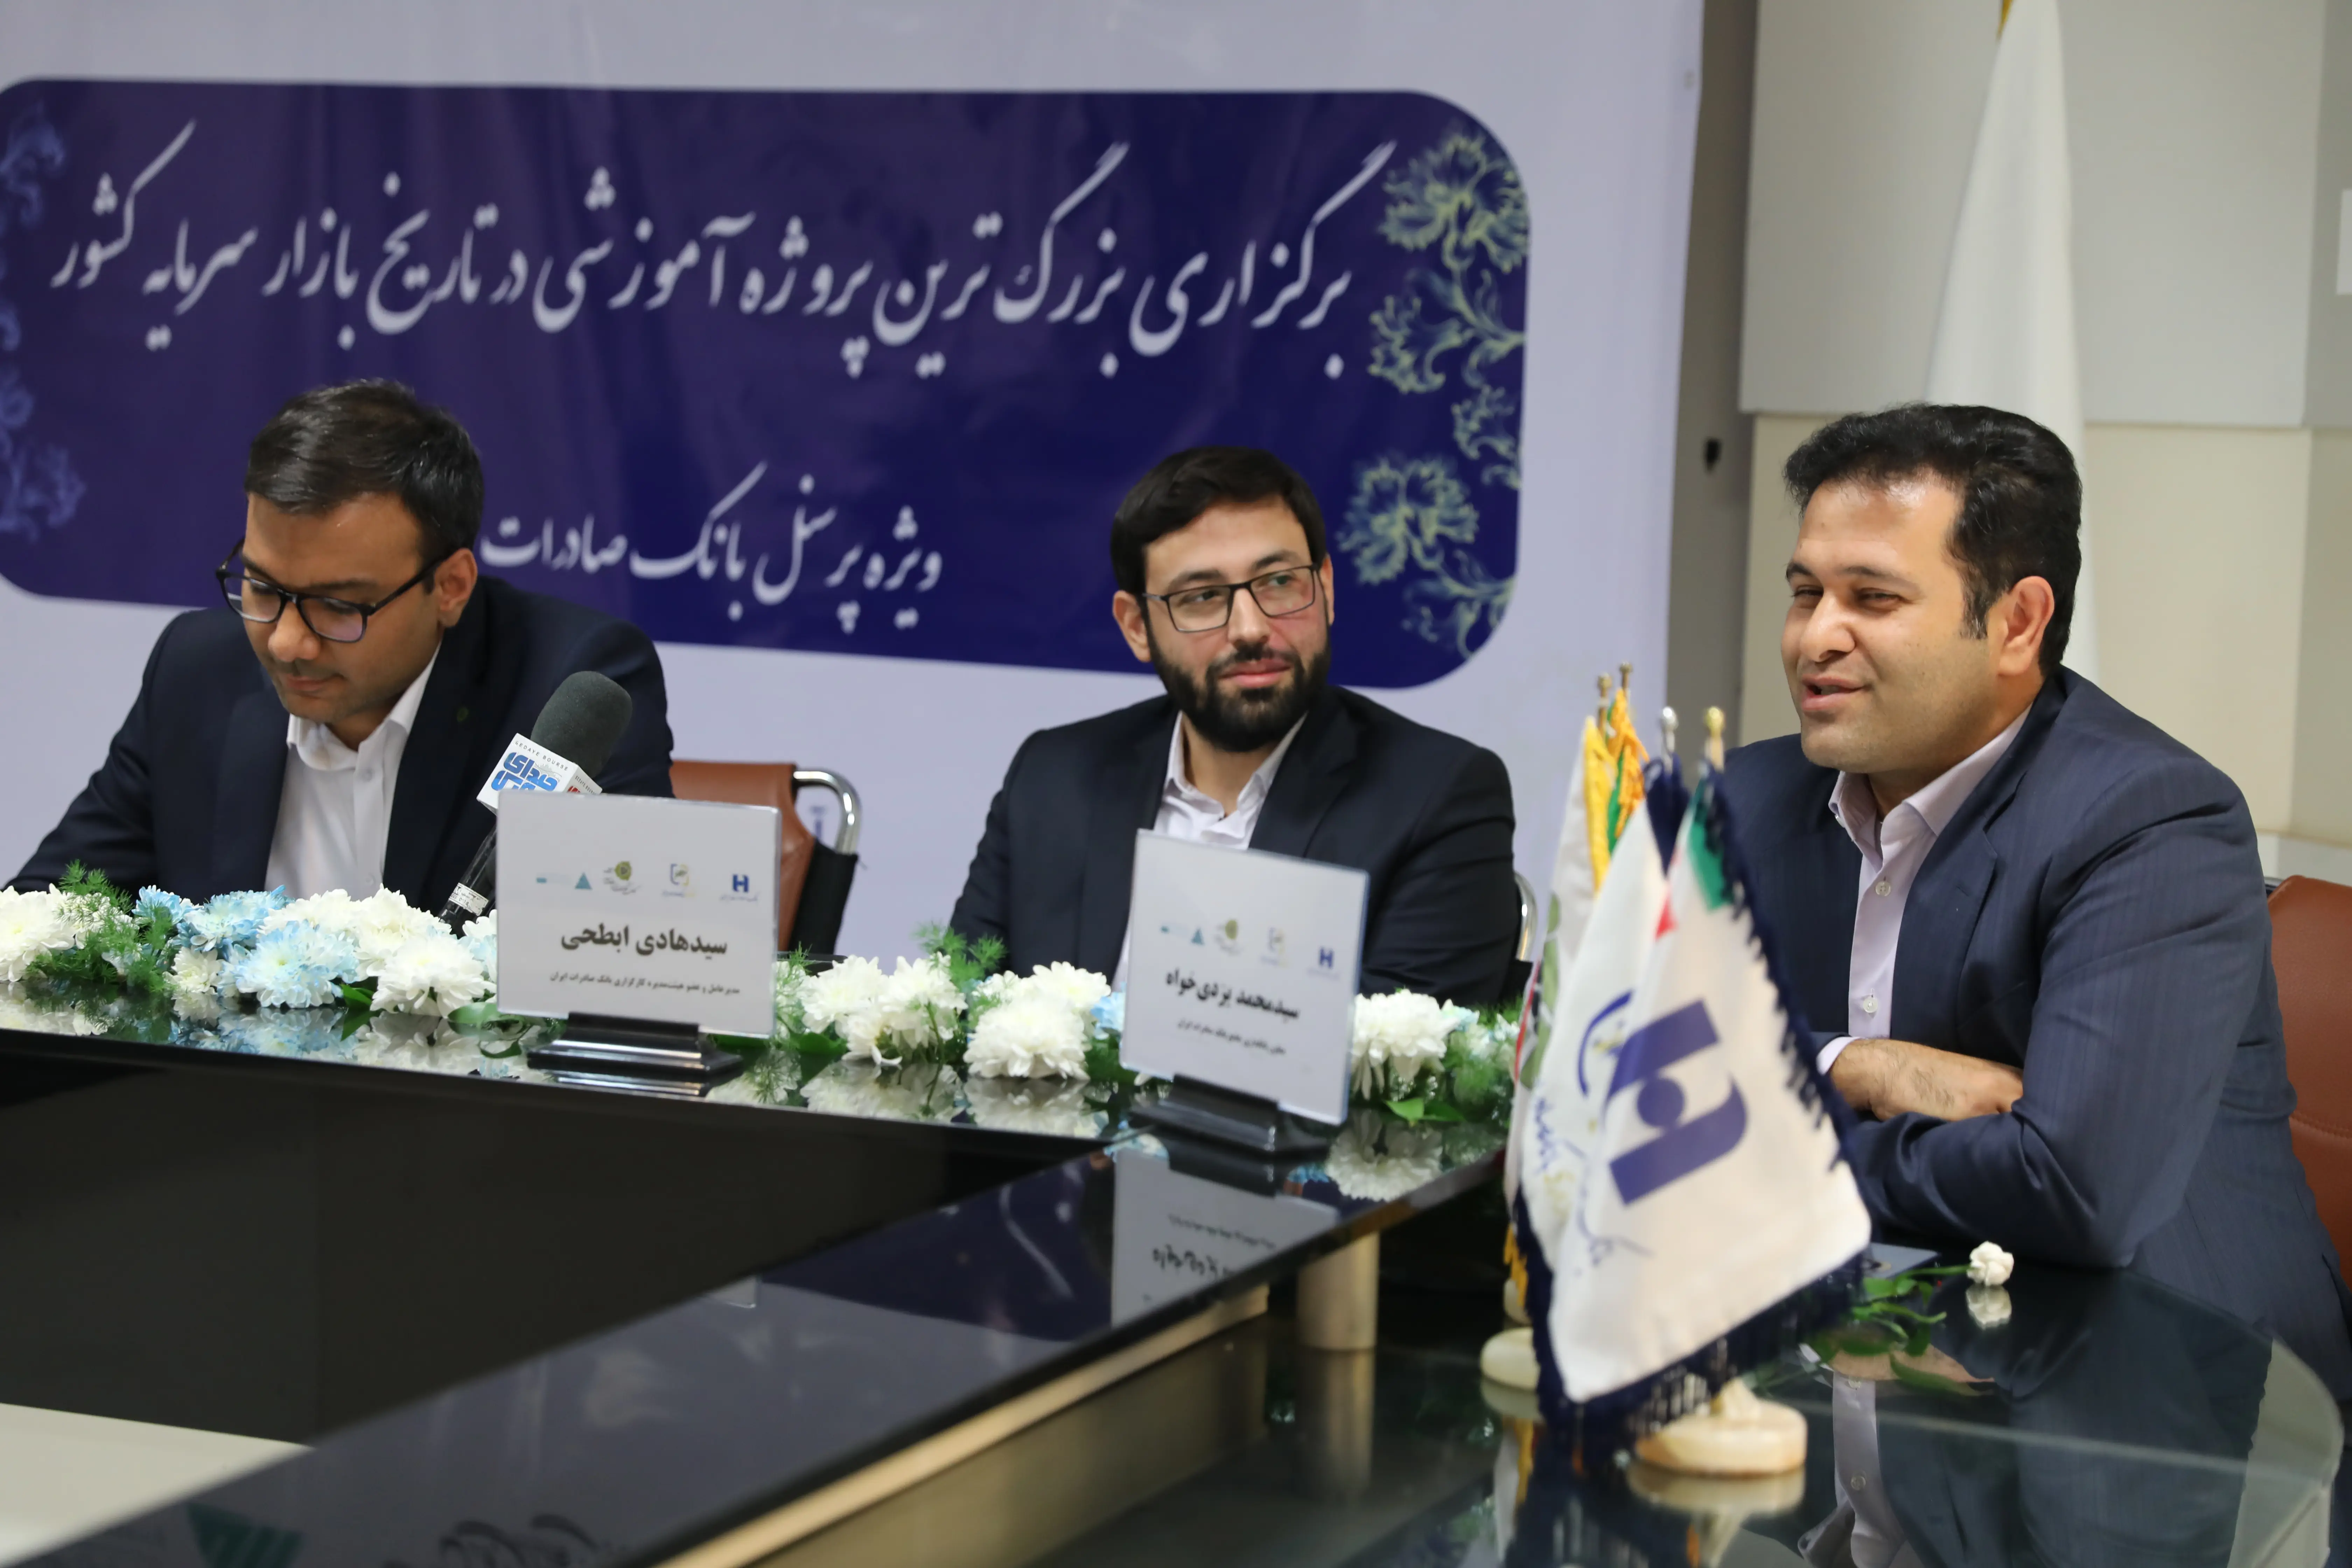 آغاز آموزش آنلاین هزاران نفری در کارگزاری بانک صادرات ایران